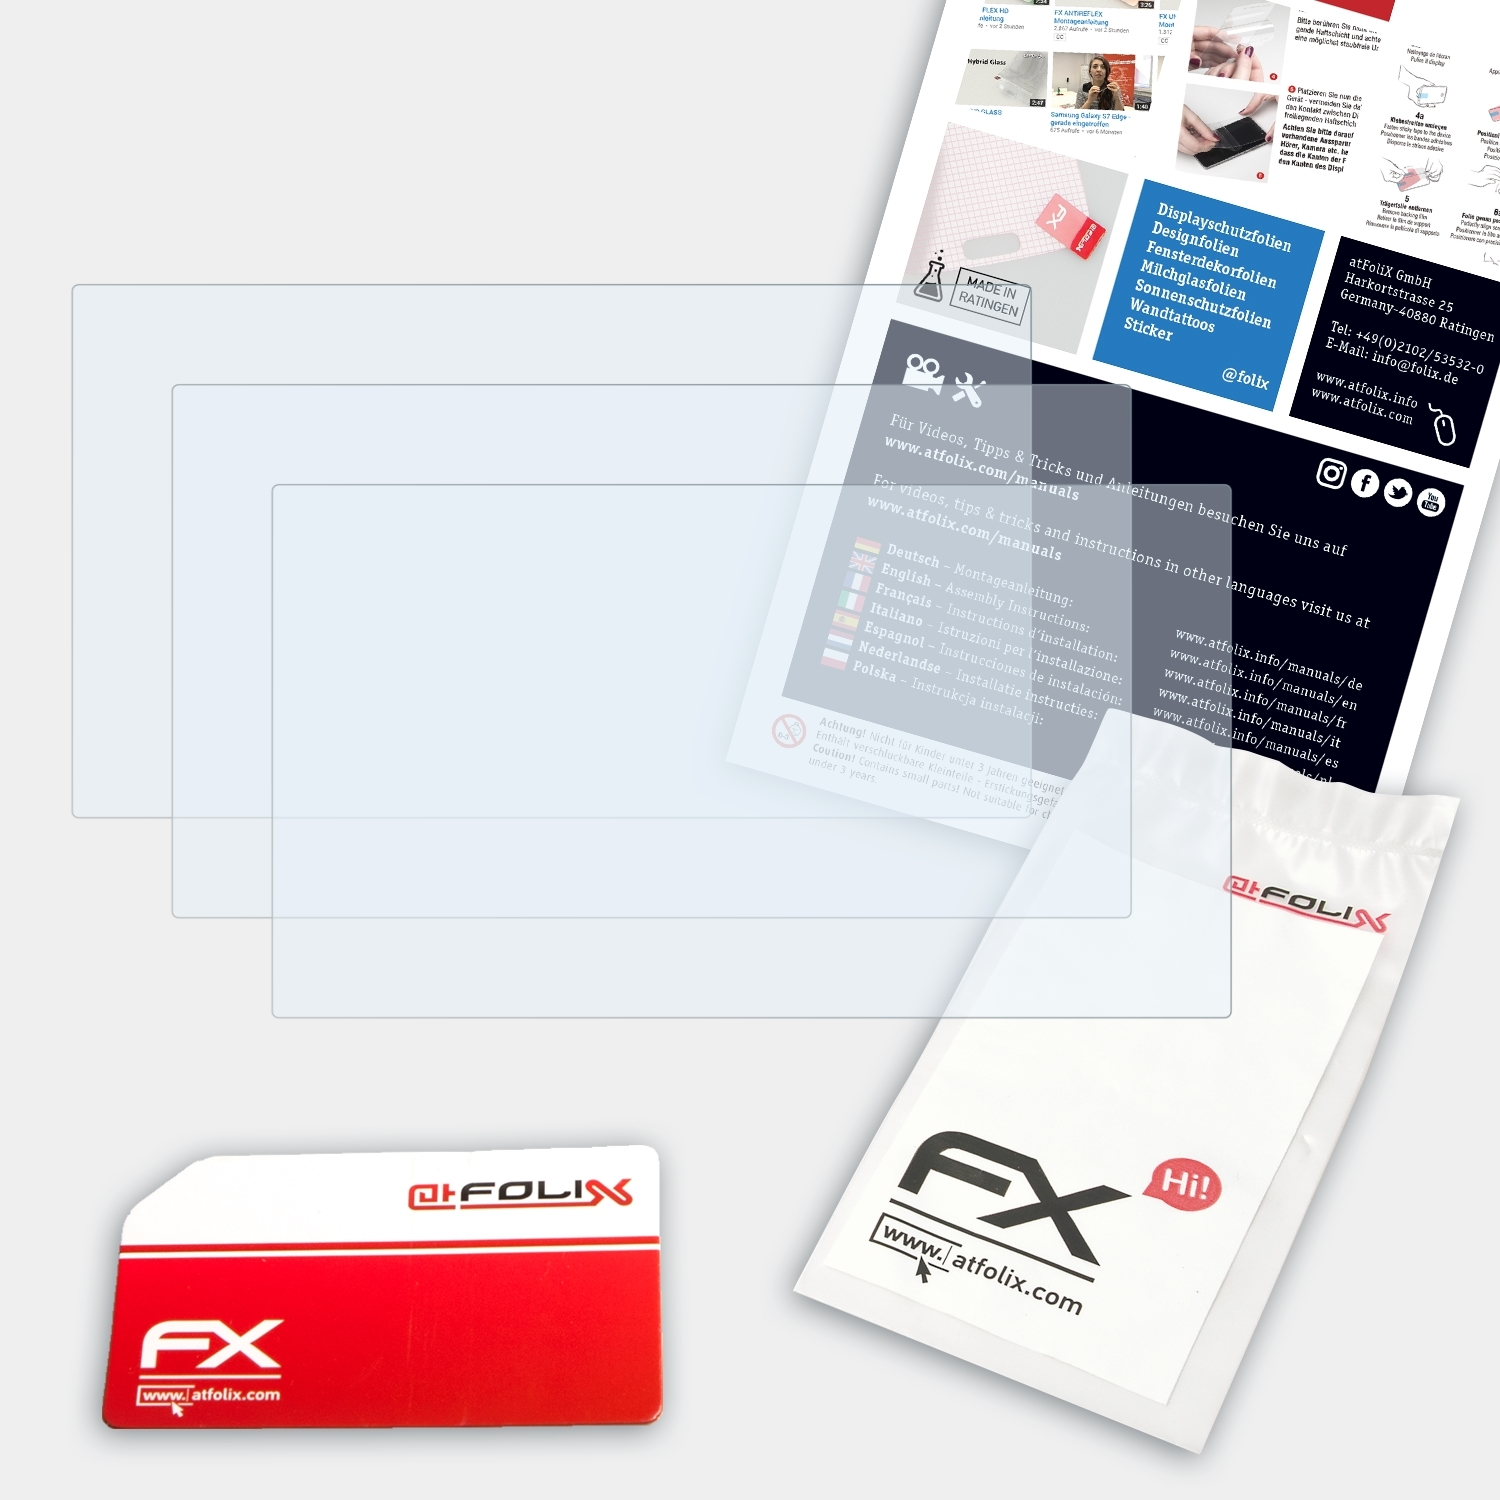 FX-Clear 3x Displayschutz(für Garmin ATFOLIX 66) DriveSmart